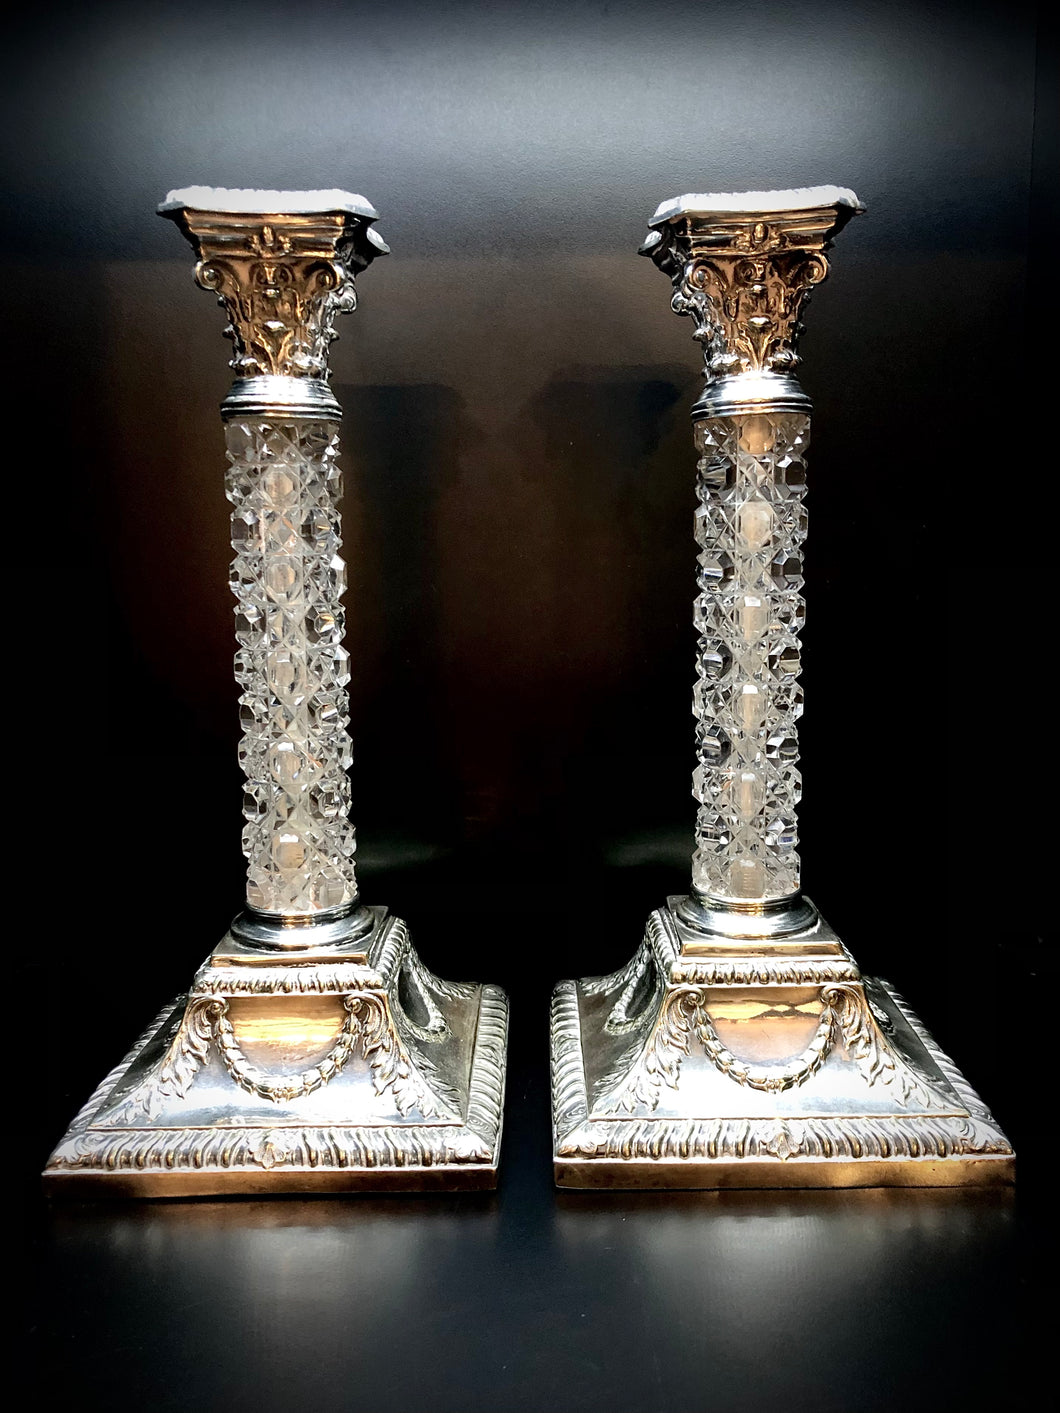 Particolare coppia di candelieri antichi in stile neoclassico con fusto in cristallo